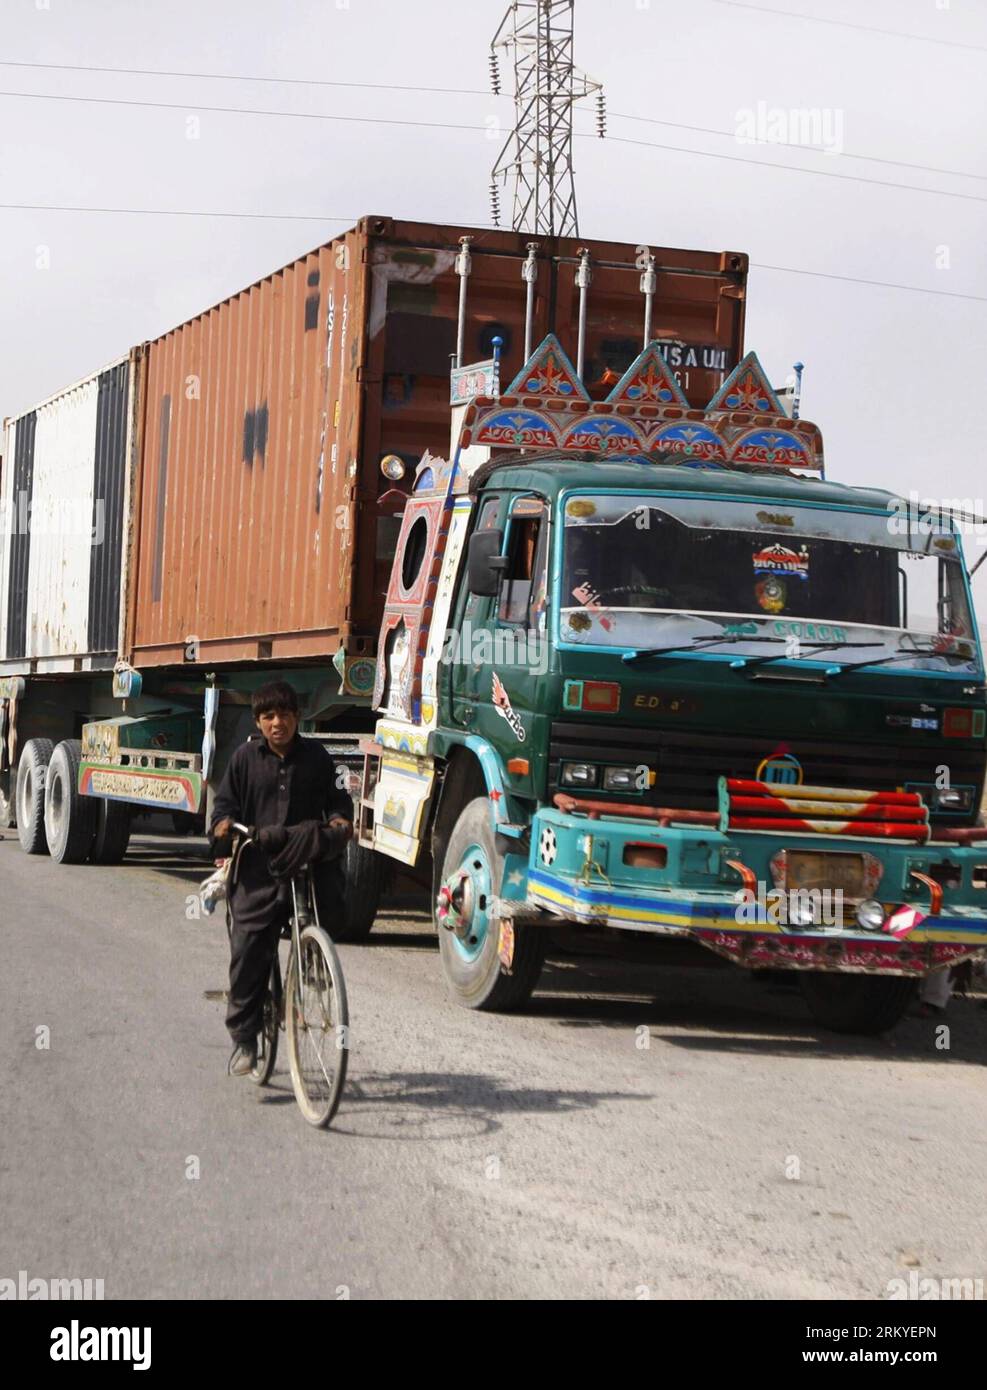 Bildnummer : 59211298 Datum : 12.02.2013 Copyright : imago/Xinhua QUETTA, 12 février 2013 - Un garçon pakistanais passe devant des camions de ravitaillement de l'OTAN garés transportant de l'équipement de l'OTAN à un poste de contrôle à Quetta, dans le sud-ouest du Pakistan, le 12 février 2013. Les États-Unis disent qu'ils ont commencé à utiliser la route terrestre à travers le Pakistan pour retirer l'équipement militaire américain d'Afghanistan. (Xinhua photo/Mohammad)(bxy) PAKISTAN-QUETTA-US MILITARY-SEVRAGE PUBLICATIONxNOTxINxCHN Gesellschaft Nato transport Truck Logistik LKW x0x xdd 2013 hoch 59211298 Date 12 02 2013 Copyright Imago XINHUA Quetta février 12 2013 un garçon pakistanais Banque D'Images